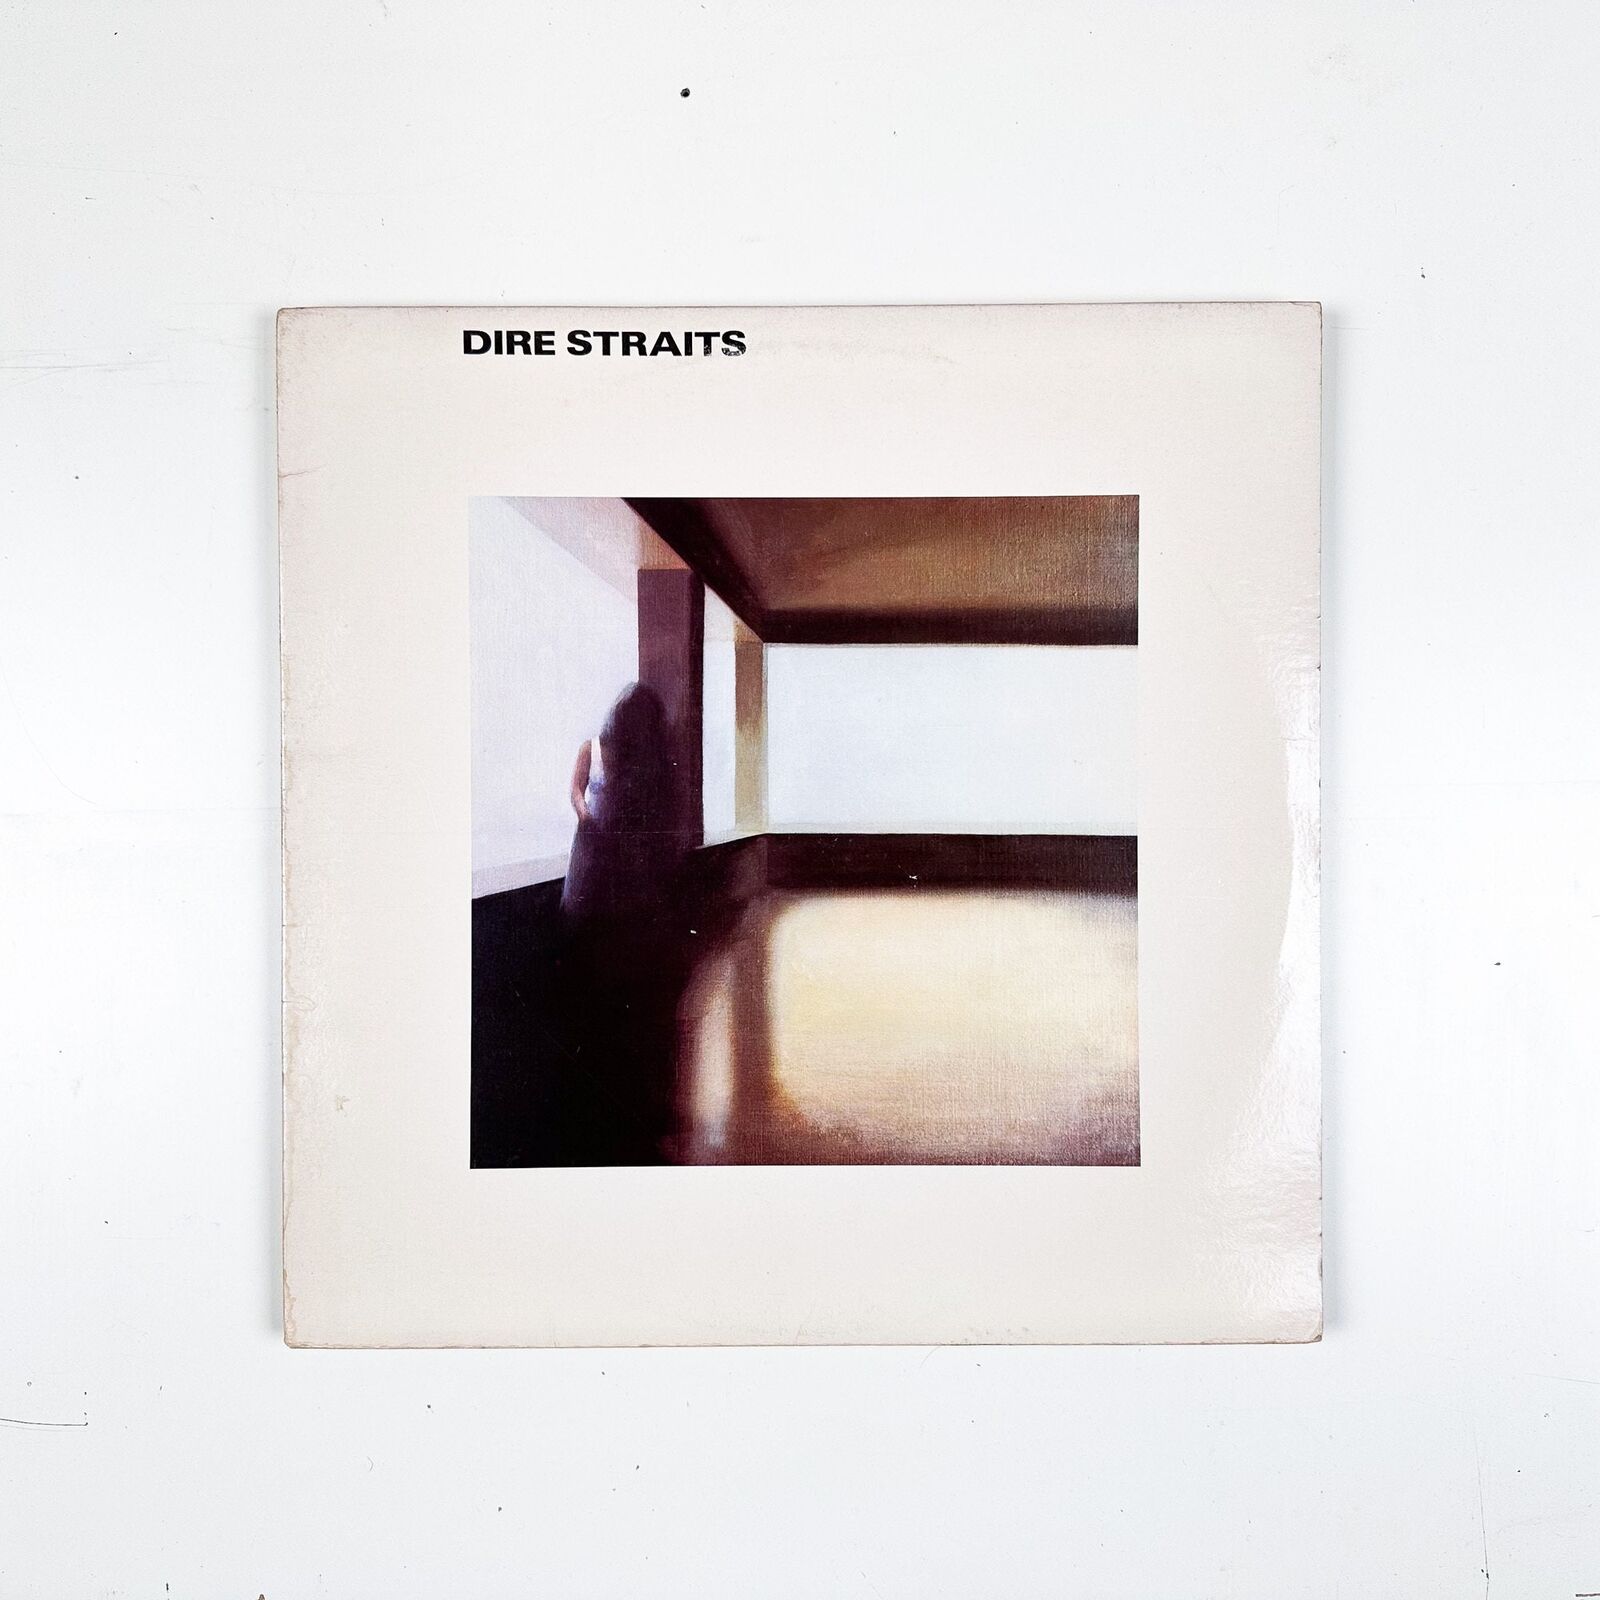 Dire Straits - Dire Straits - Vinyl LP Record - 1978